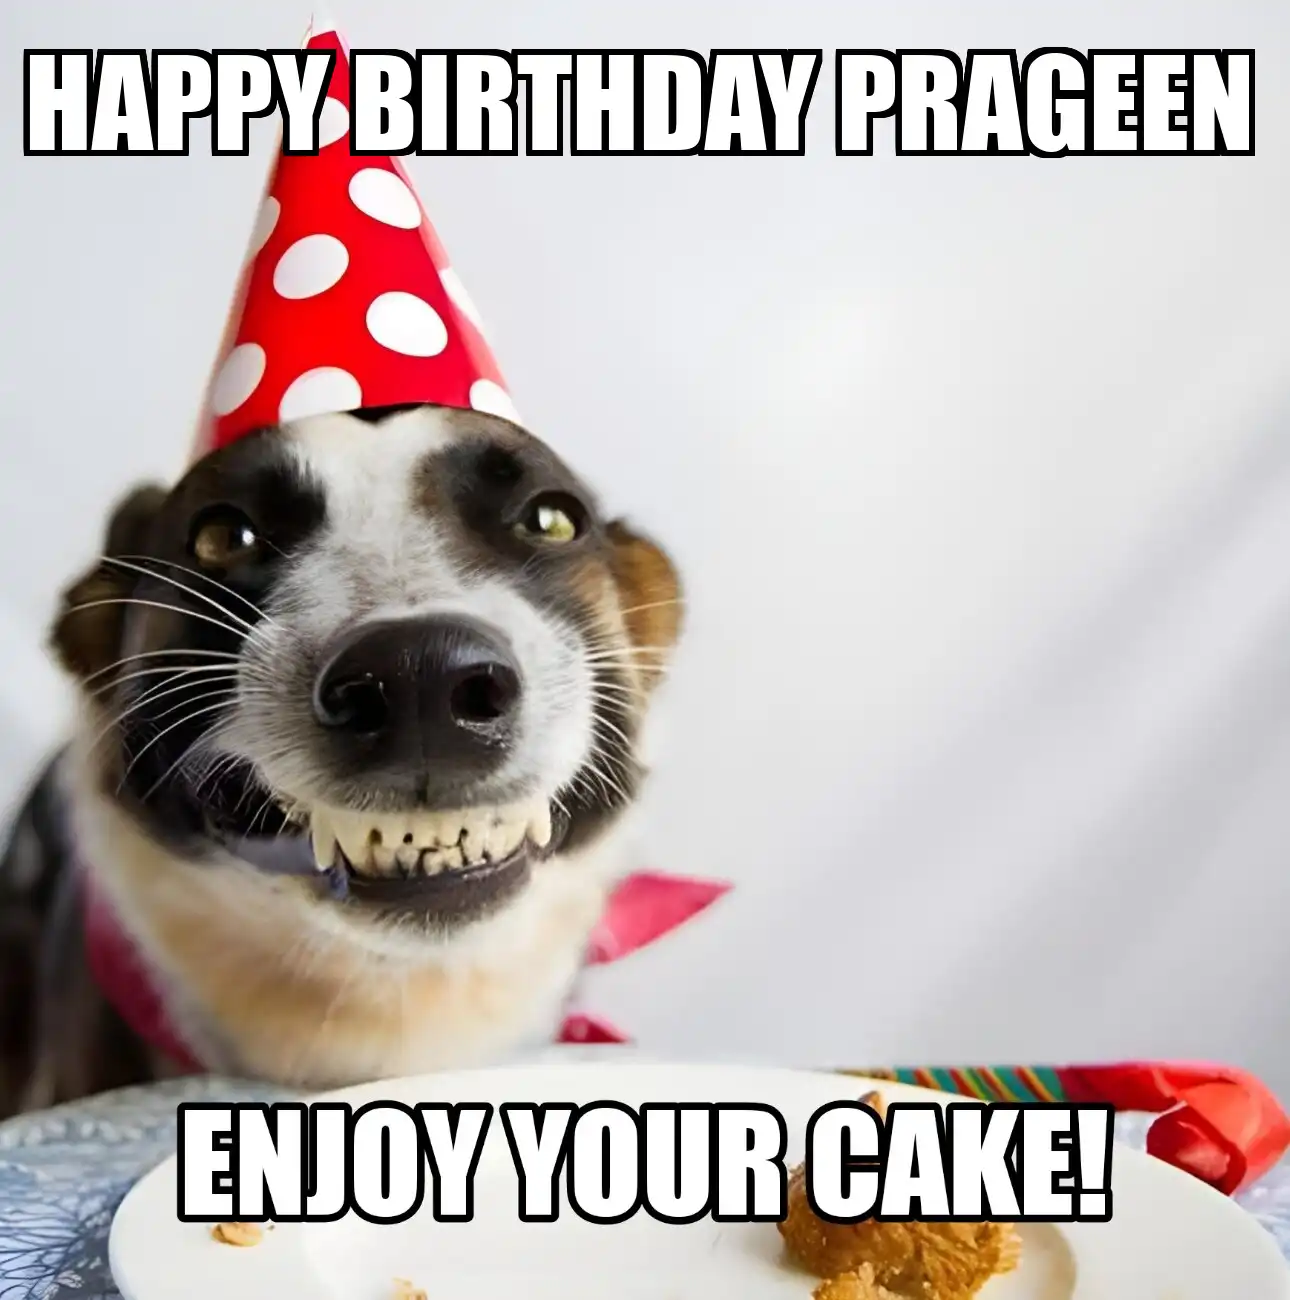 Happy Birthday Prageen Enjoy Your Cake Dog Meme